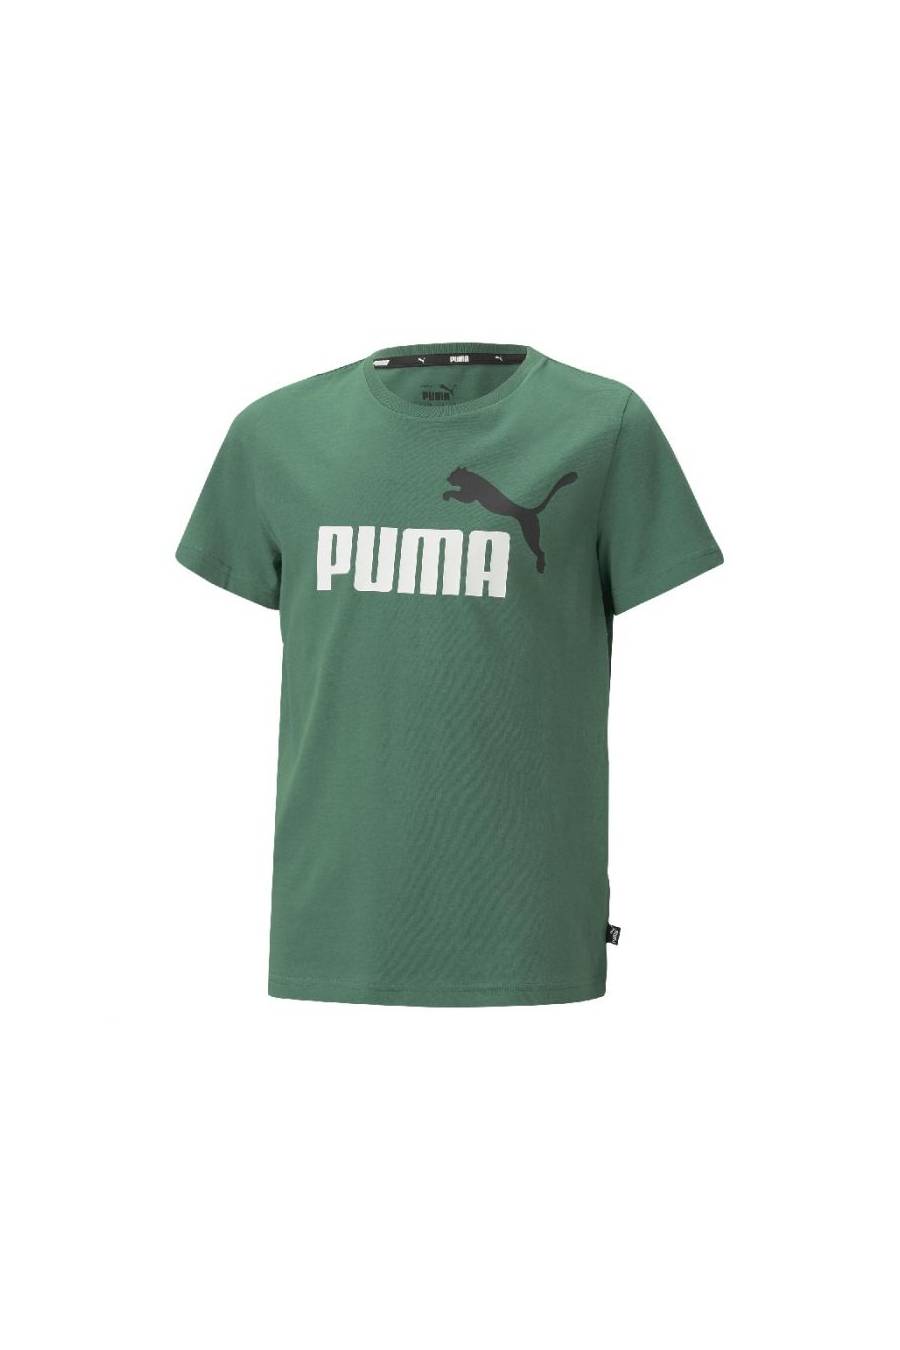 Camiseta Puma ESS+ 2 Col Logo 586985-37